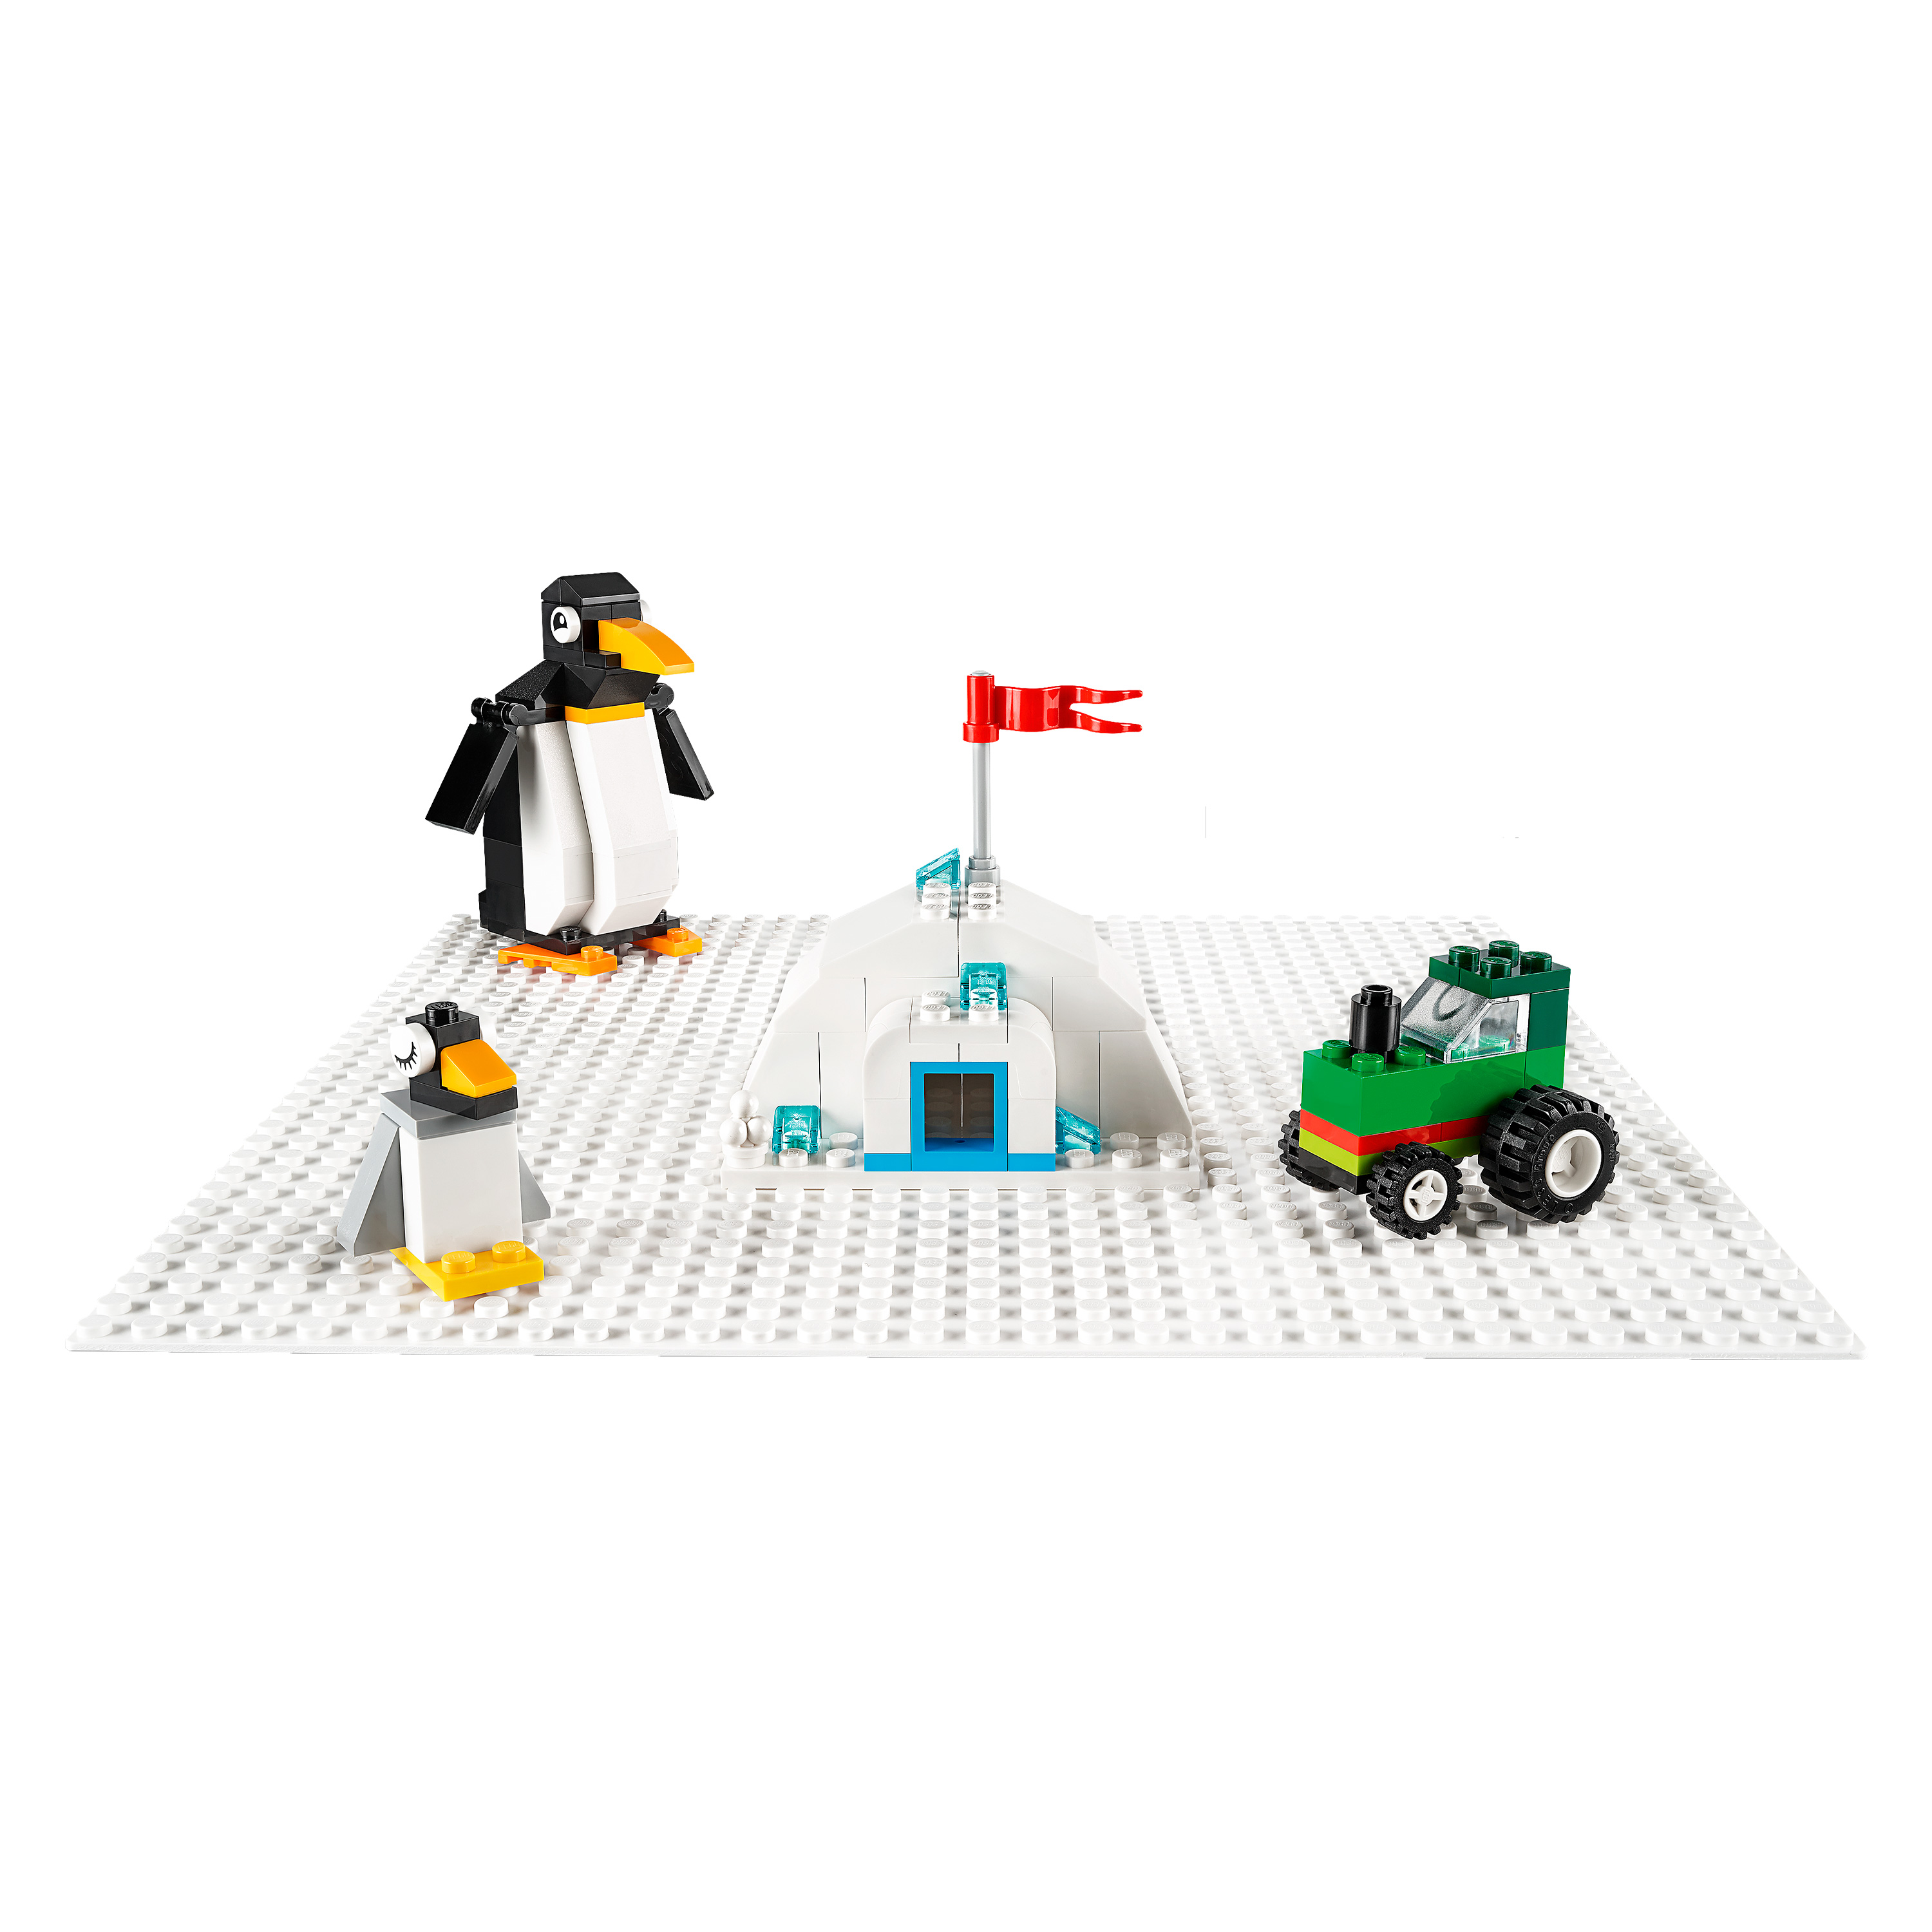 Grund-Platte Lego Klemm-bau-Steine 11023 - grün Bau-Platte